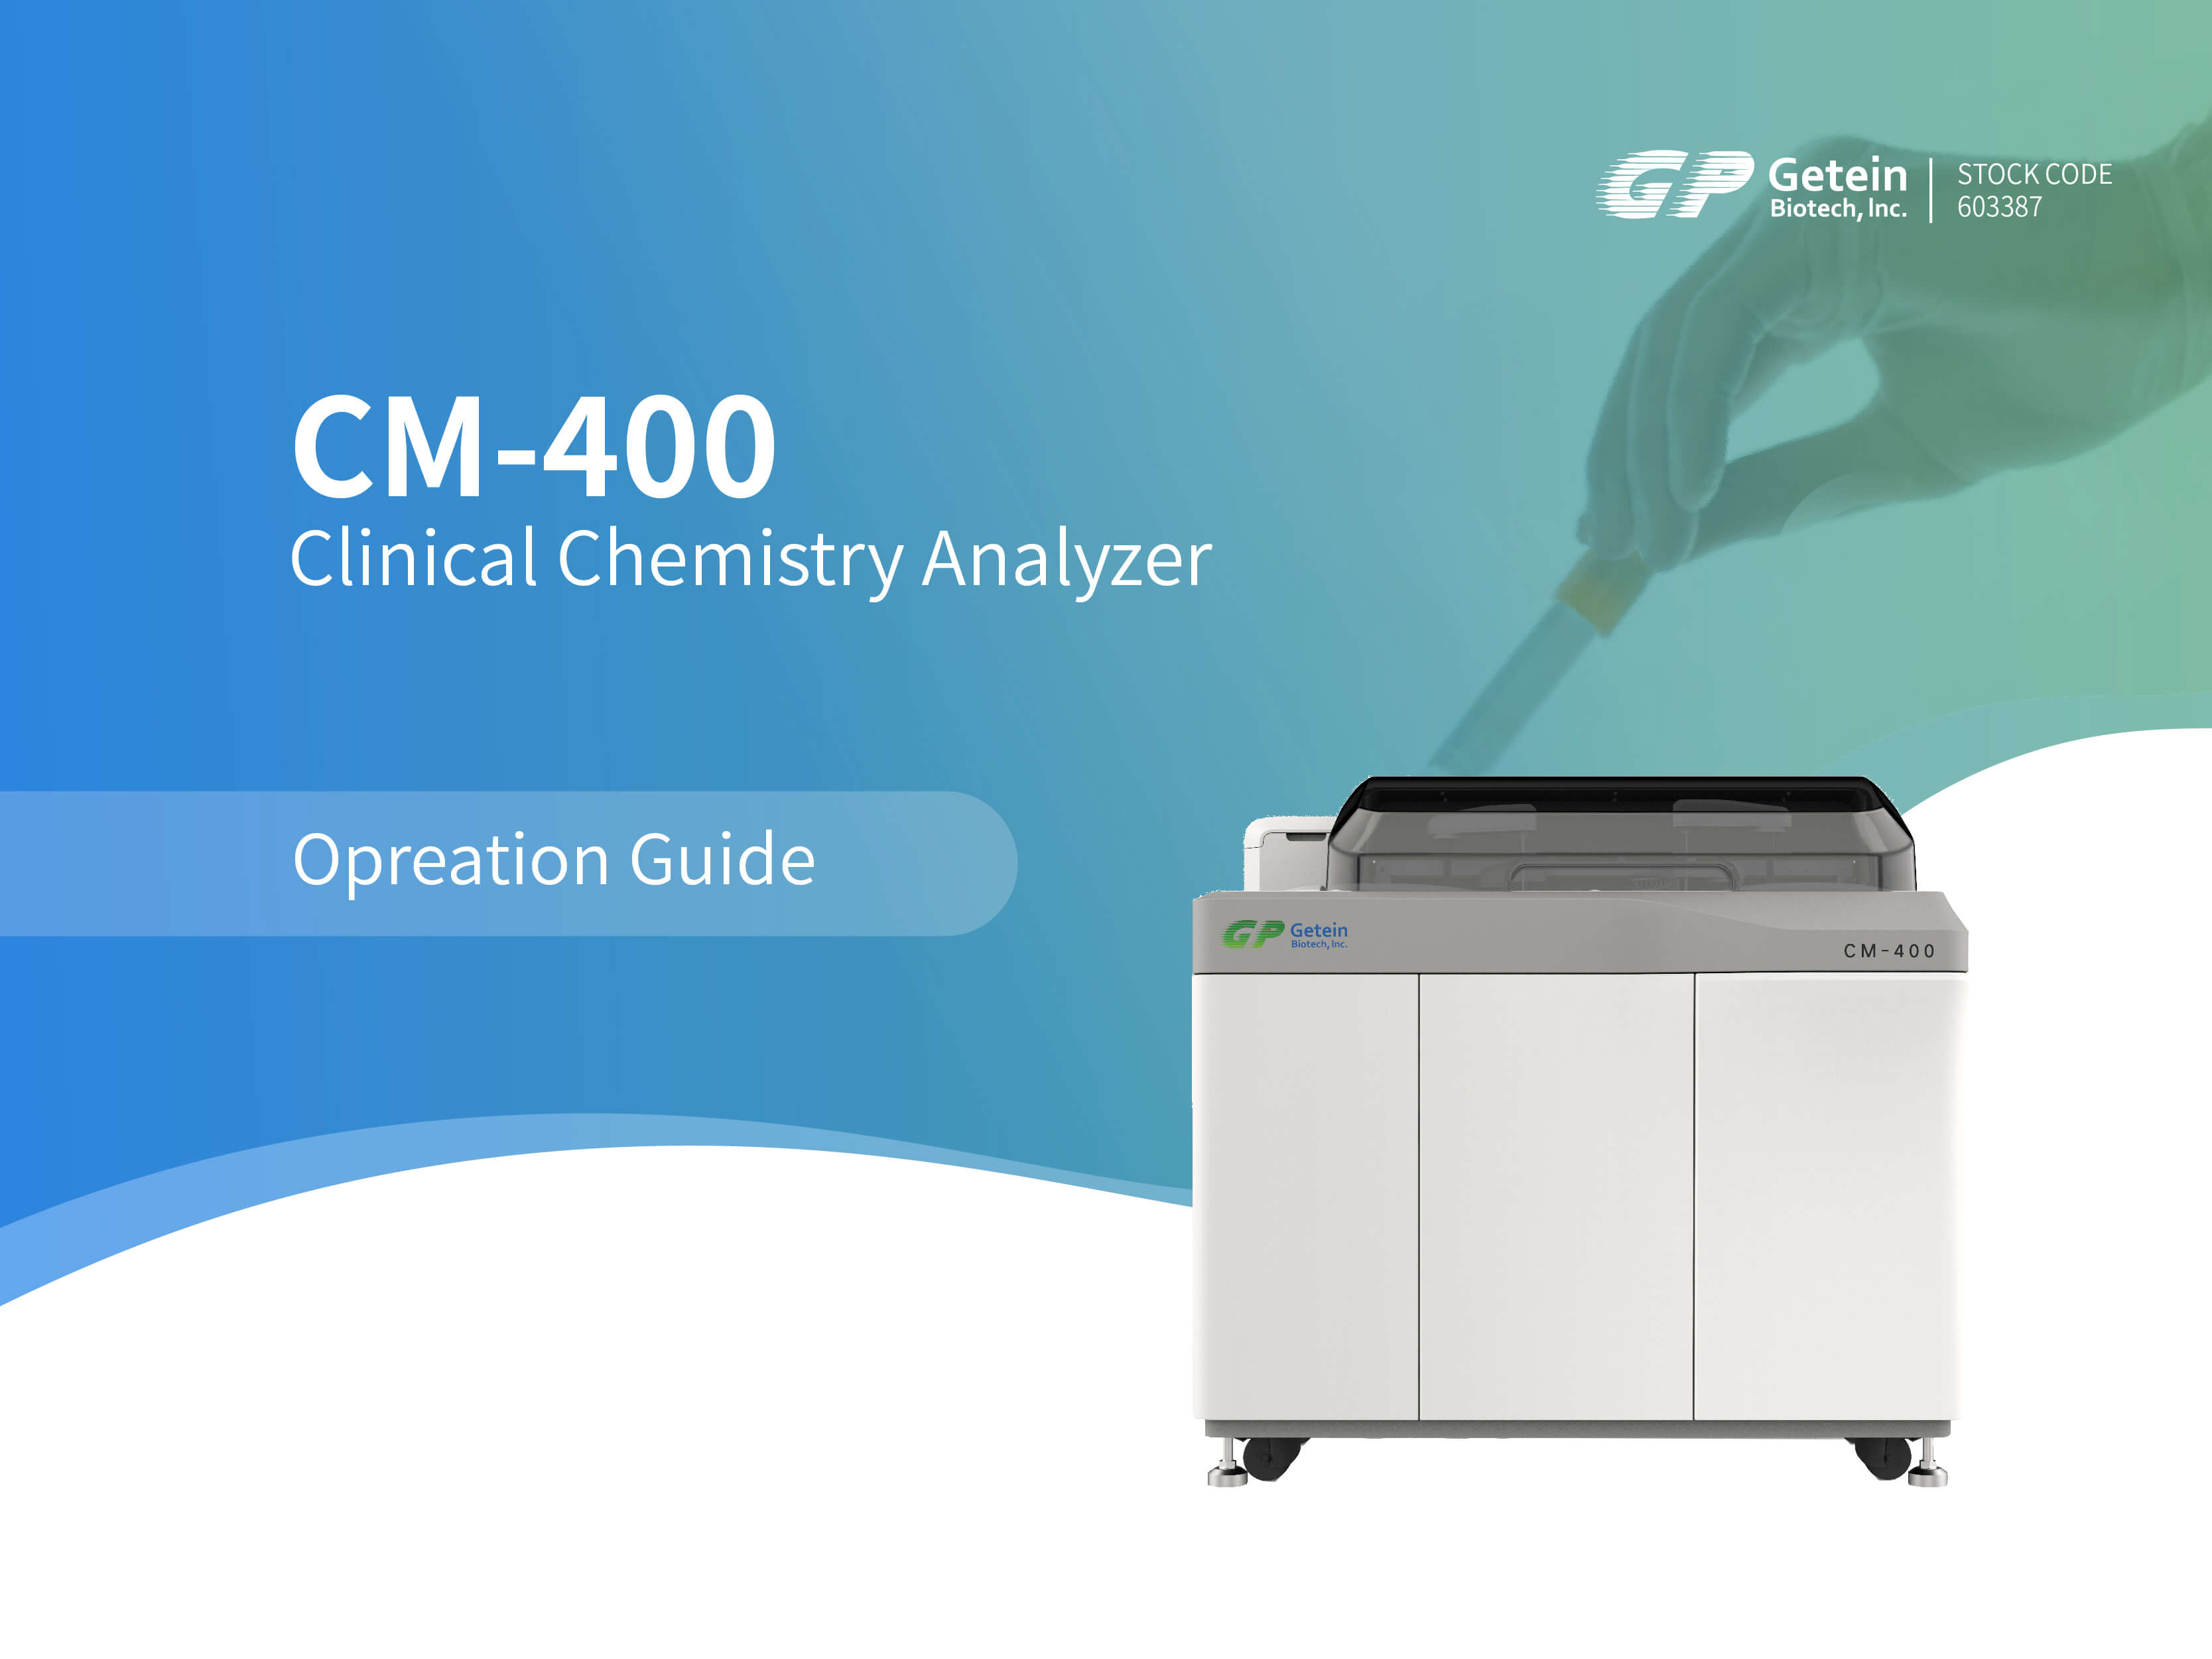 Guide d'utilisation de l'analyseur de chimie clinique Getein CM-400